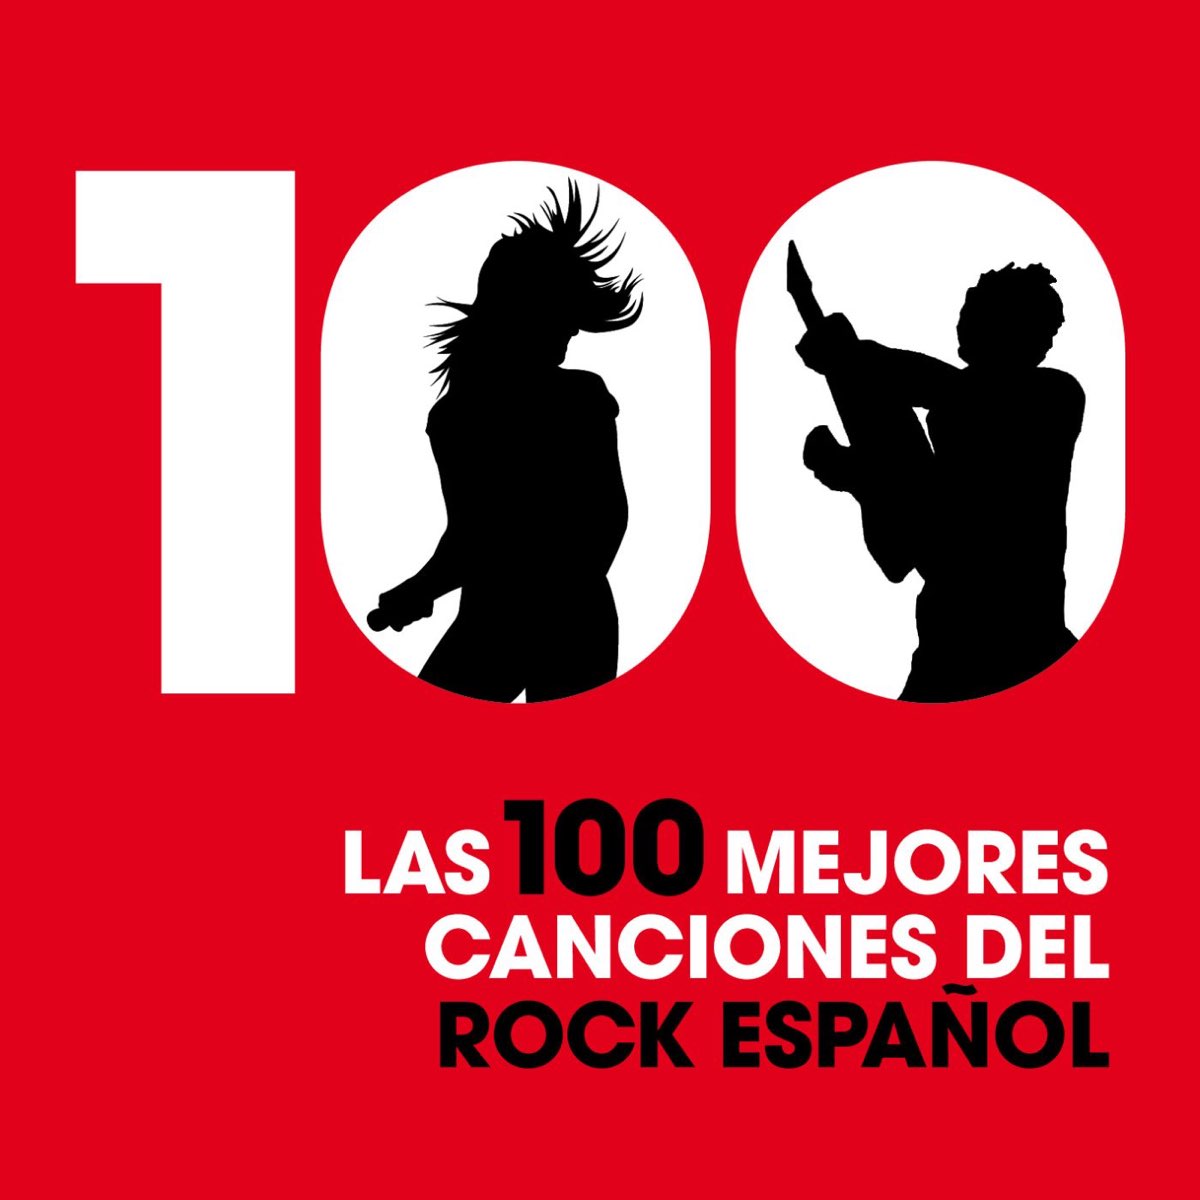 Las 100 Mejores Canciones del Rock Español de Varios Artistas en Apple Music